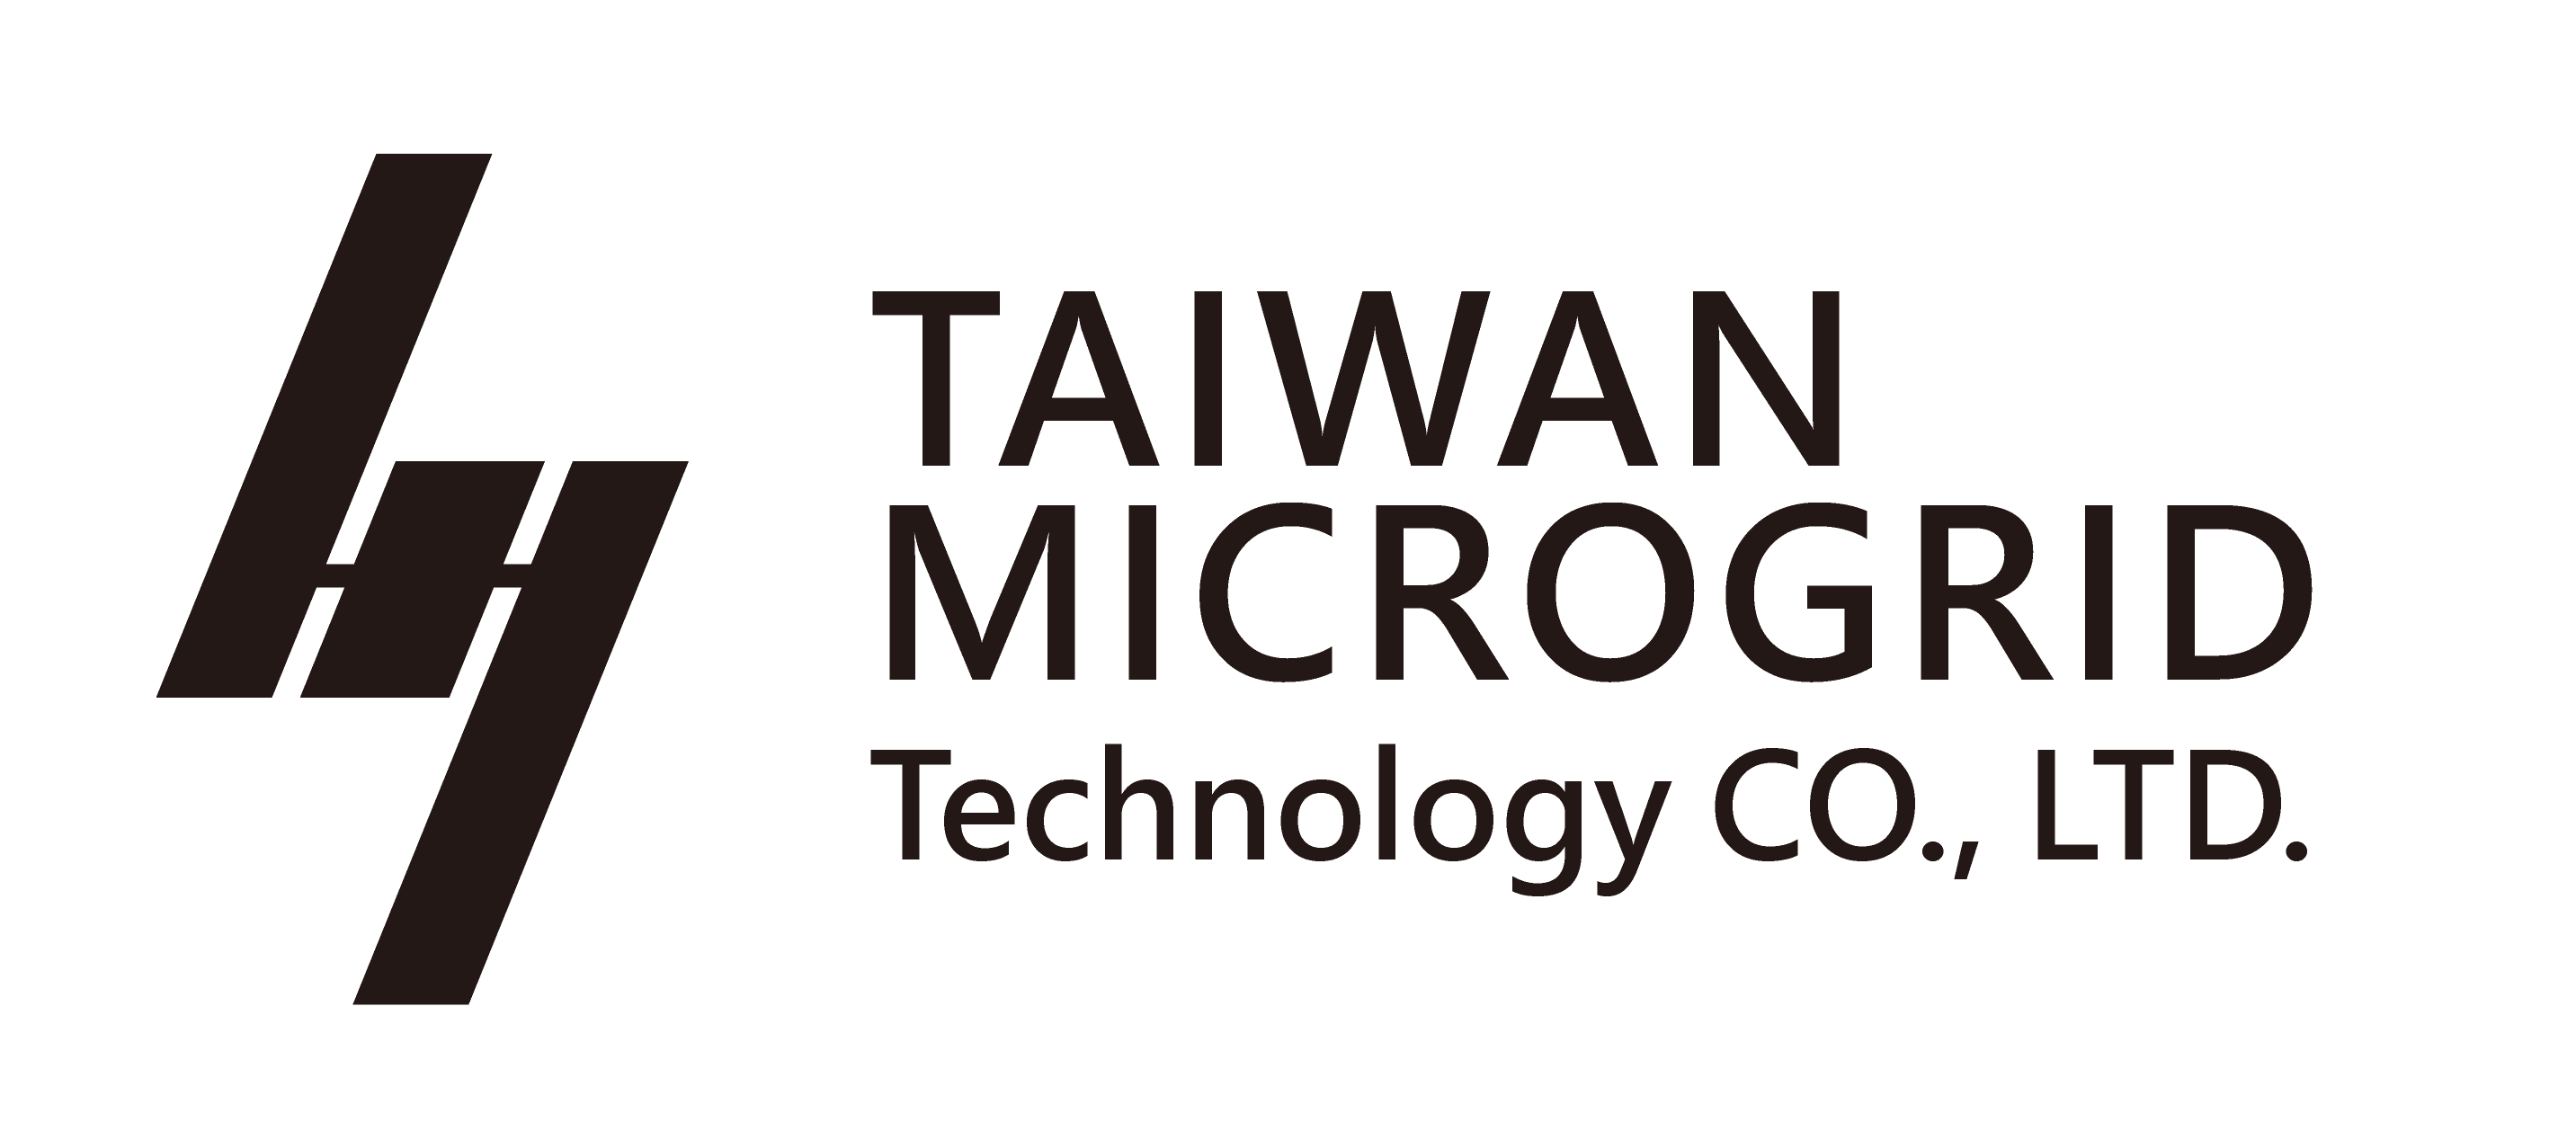 台灣微網科技股份有限公司